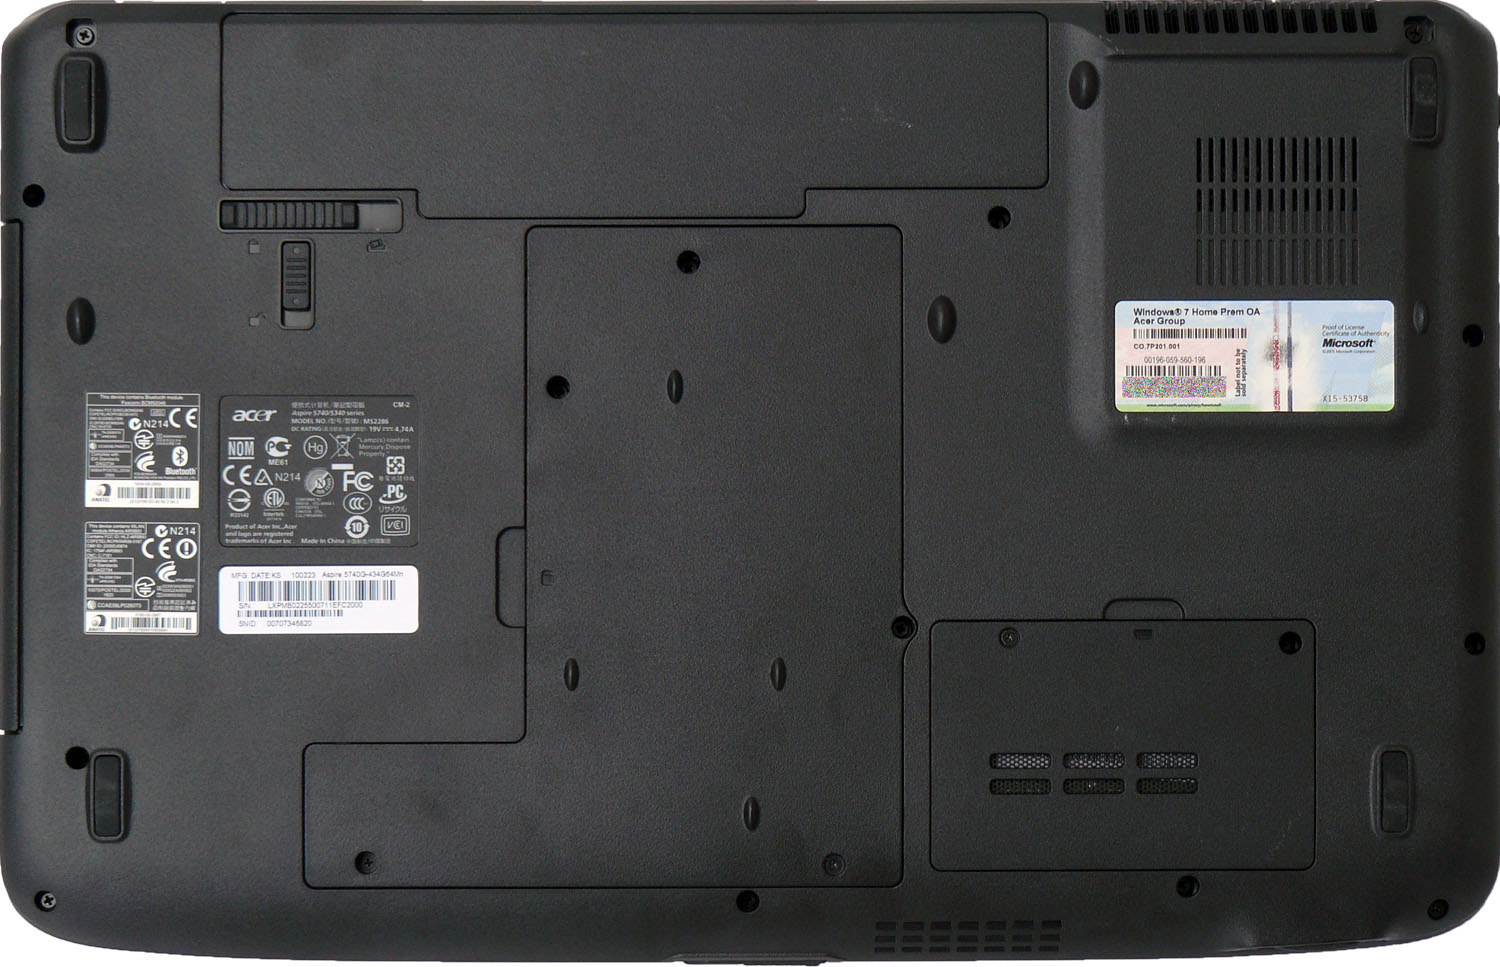 Acer Aspire 5740G — herní stroj za lidovou cenu